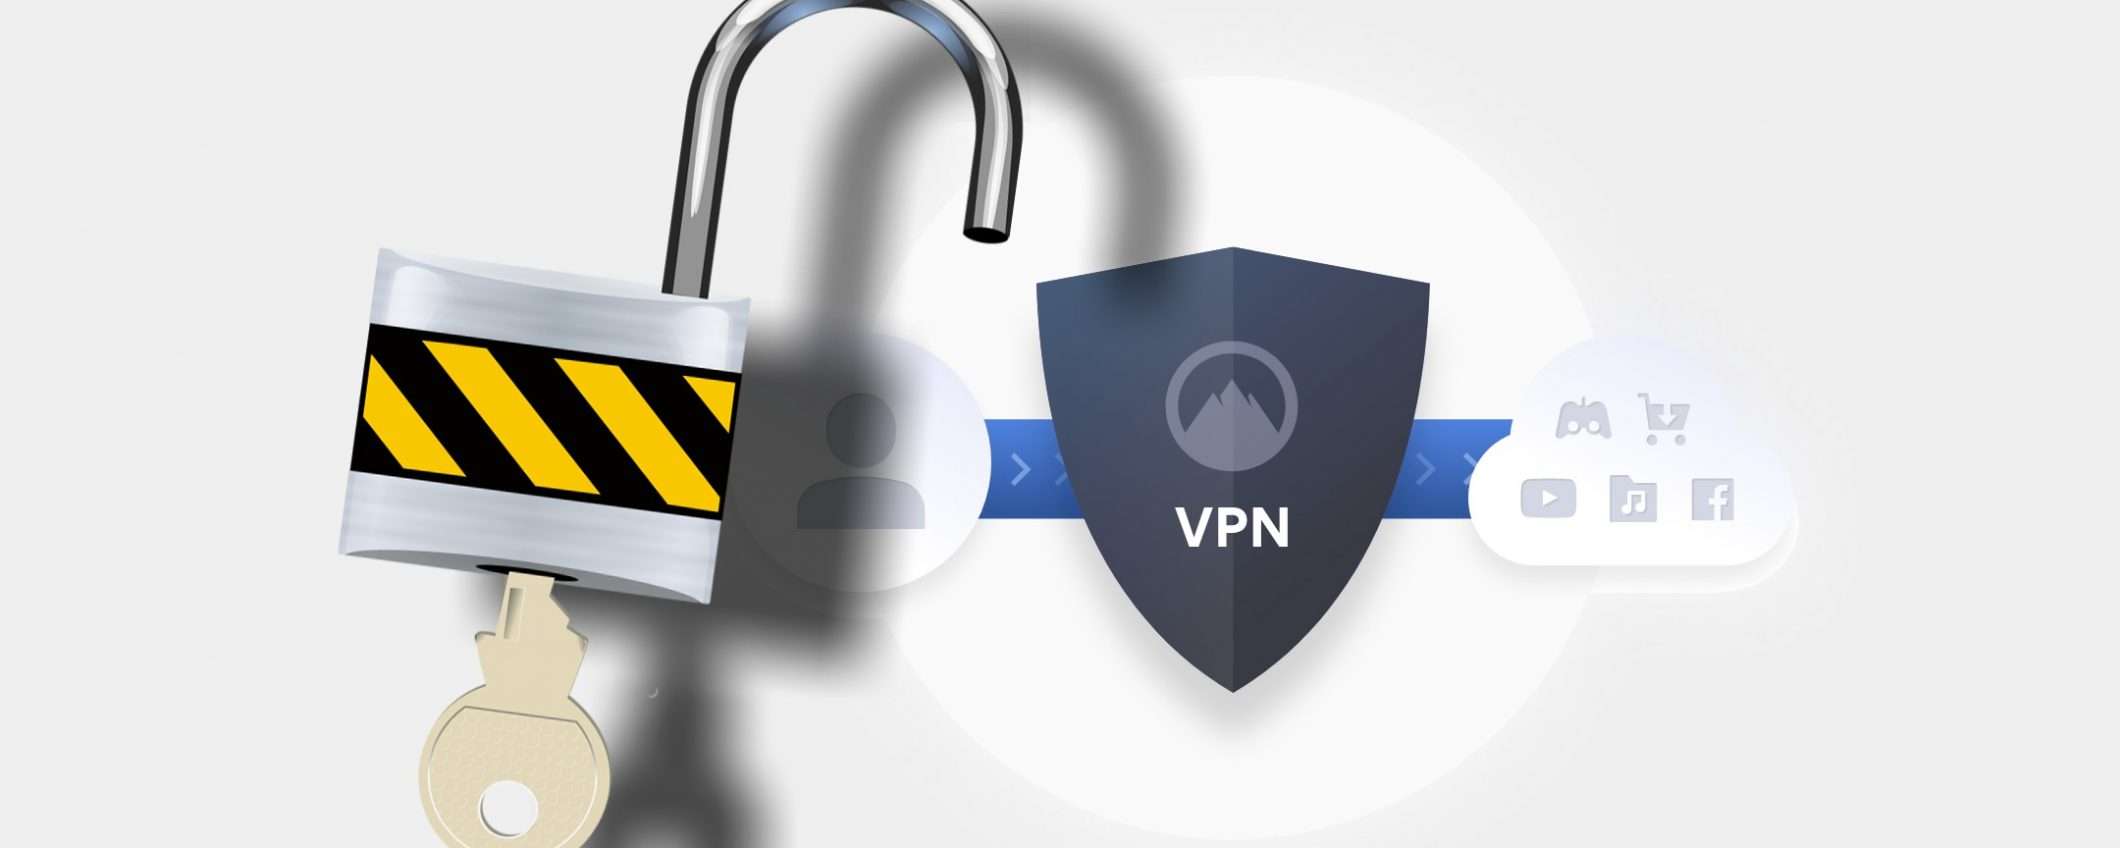 VPN o spie? 1TB di dati in chiaro a Hong Kong